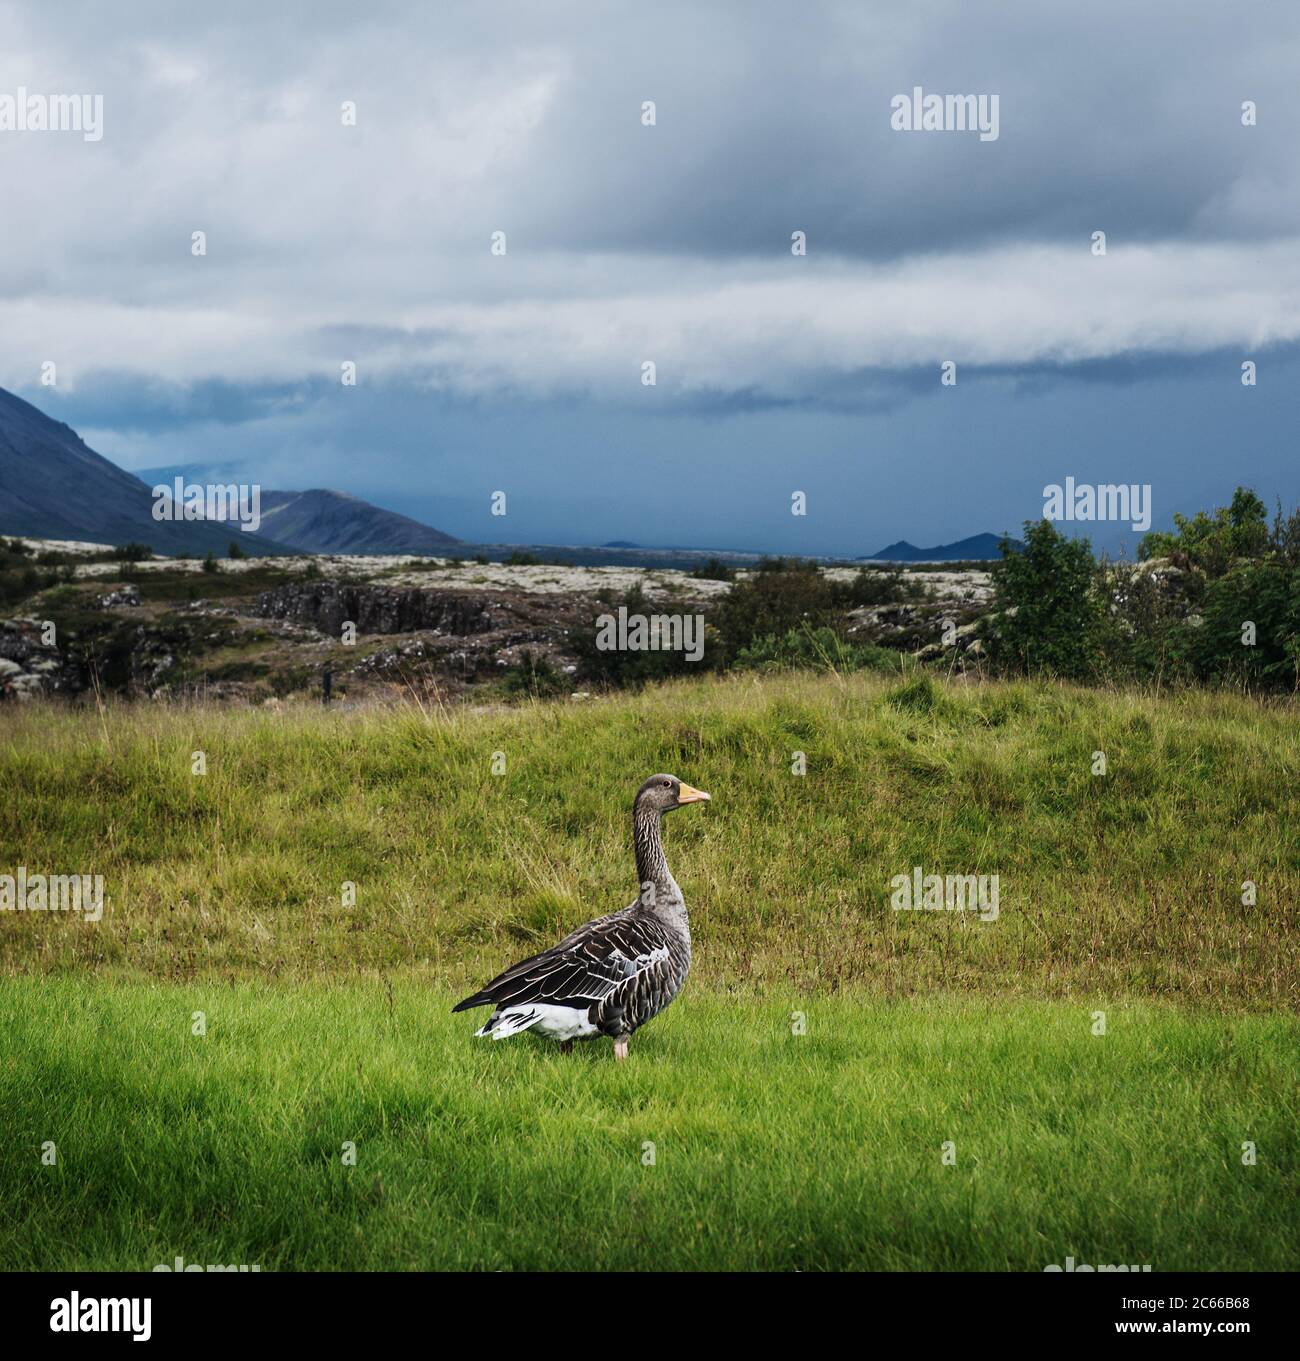 Canard sauvage sur une colline dans le cercle d'or, sud de l'Islande, Islande, Scandinavie, Europe Banque D'Images